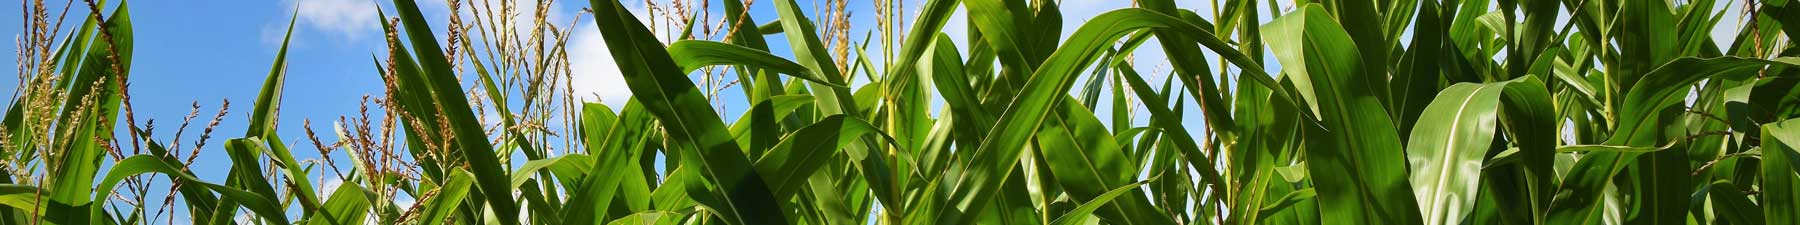 Chr. Hansen ATTIS®  corn field